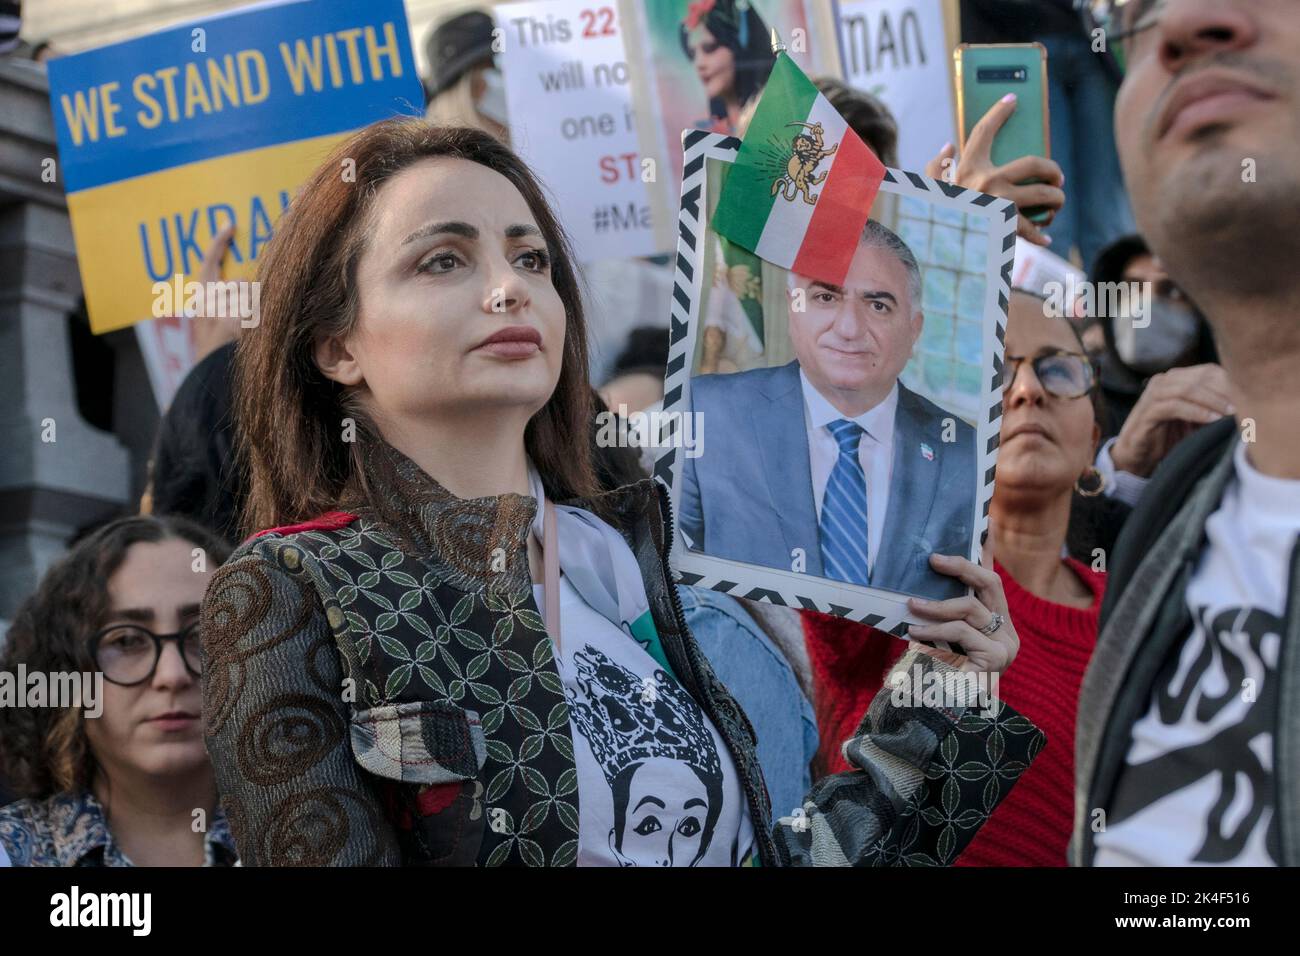 Donna, vita, libertà”: La protesta di Londra sull’Iran attira migliaia di persone per protestare dopo la morte di Mahsa Amini in custodia di polizia 01-10-2022 Foto Stock